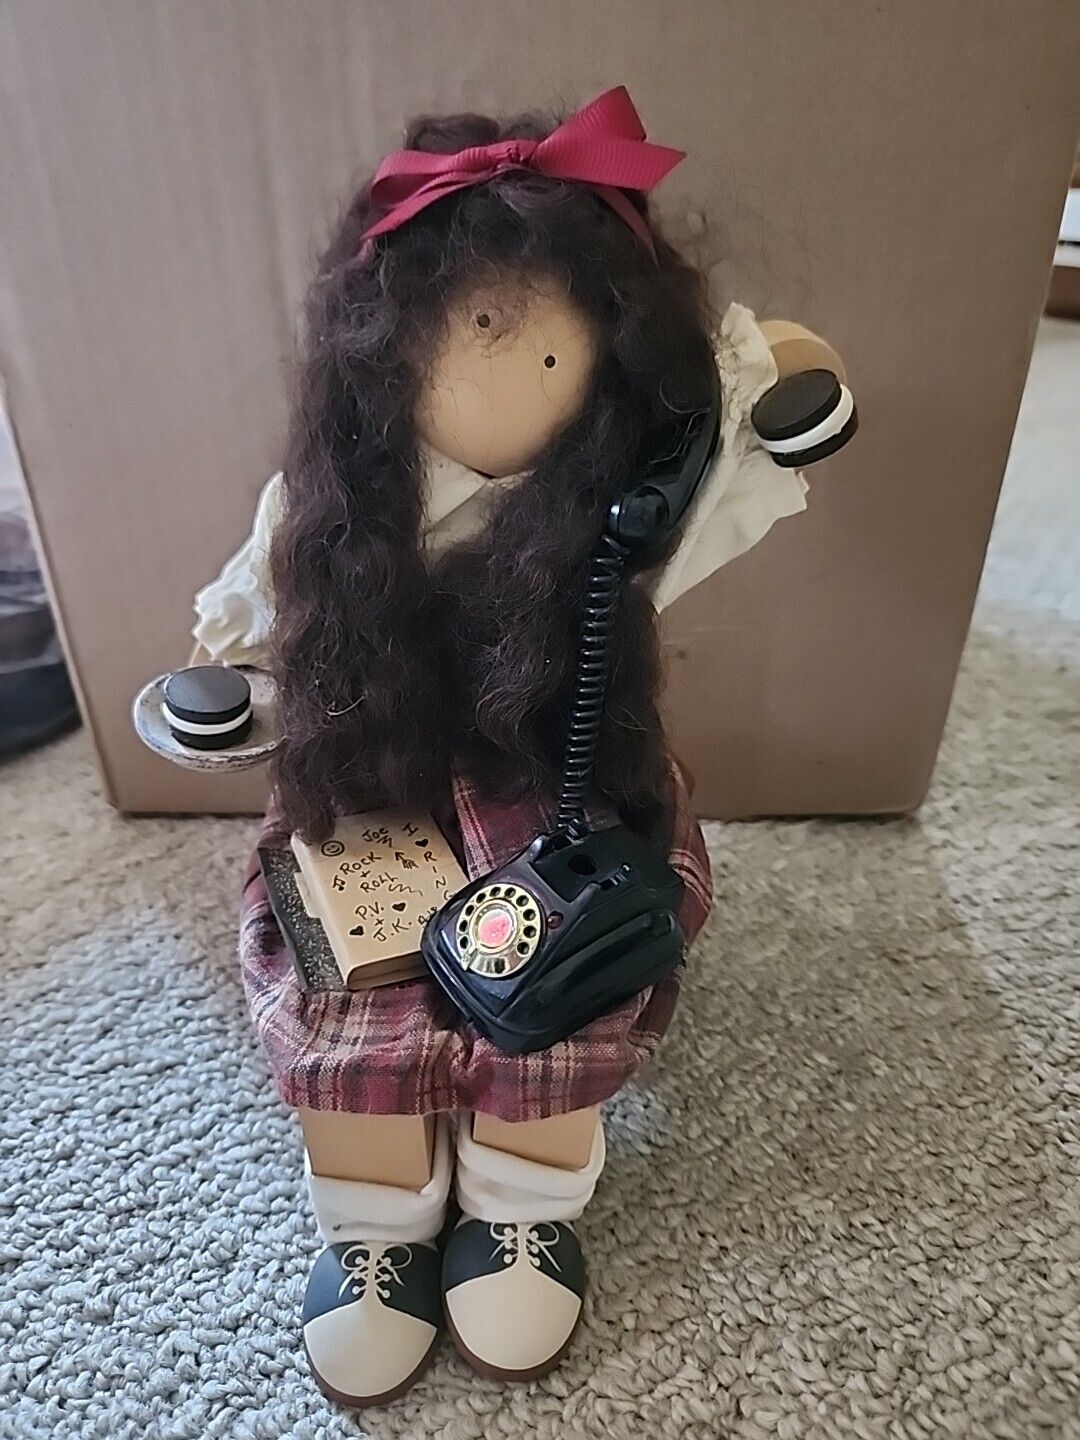 Lizzie High Doll Patti Valentine #1439 1998 Handcrafted Wooden Doll